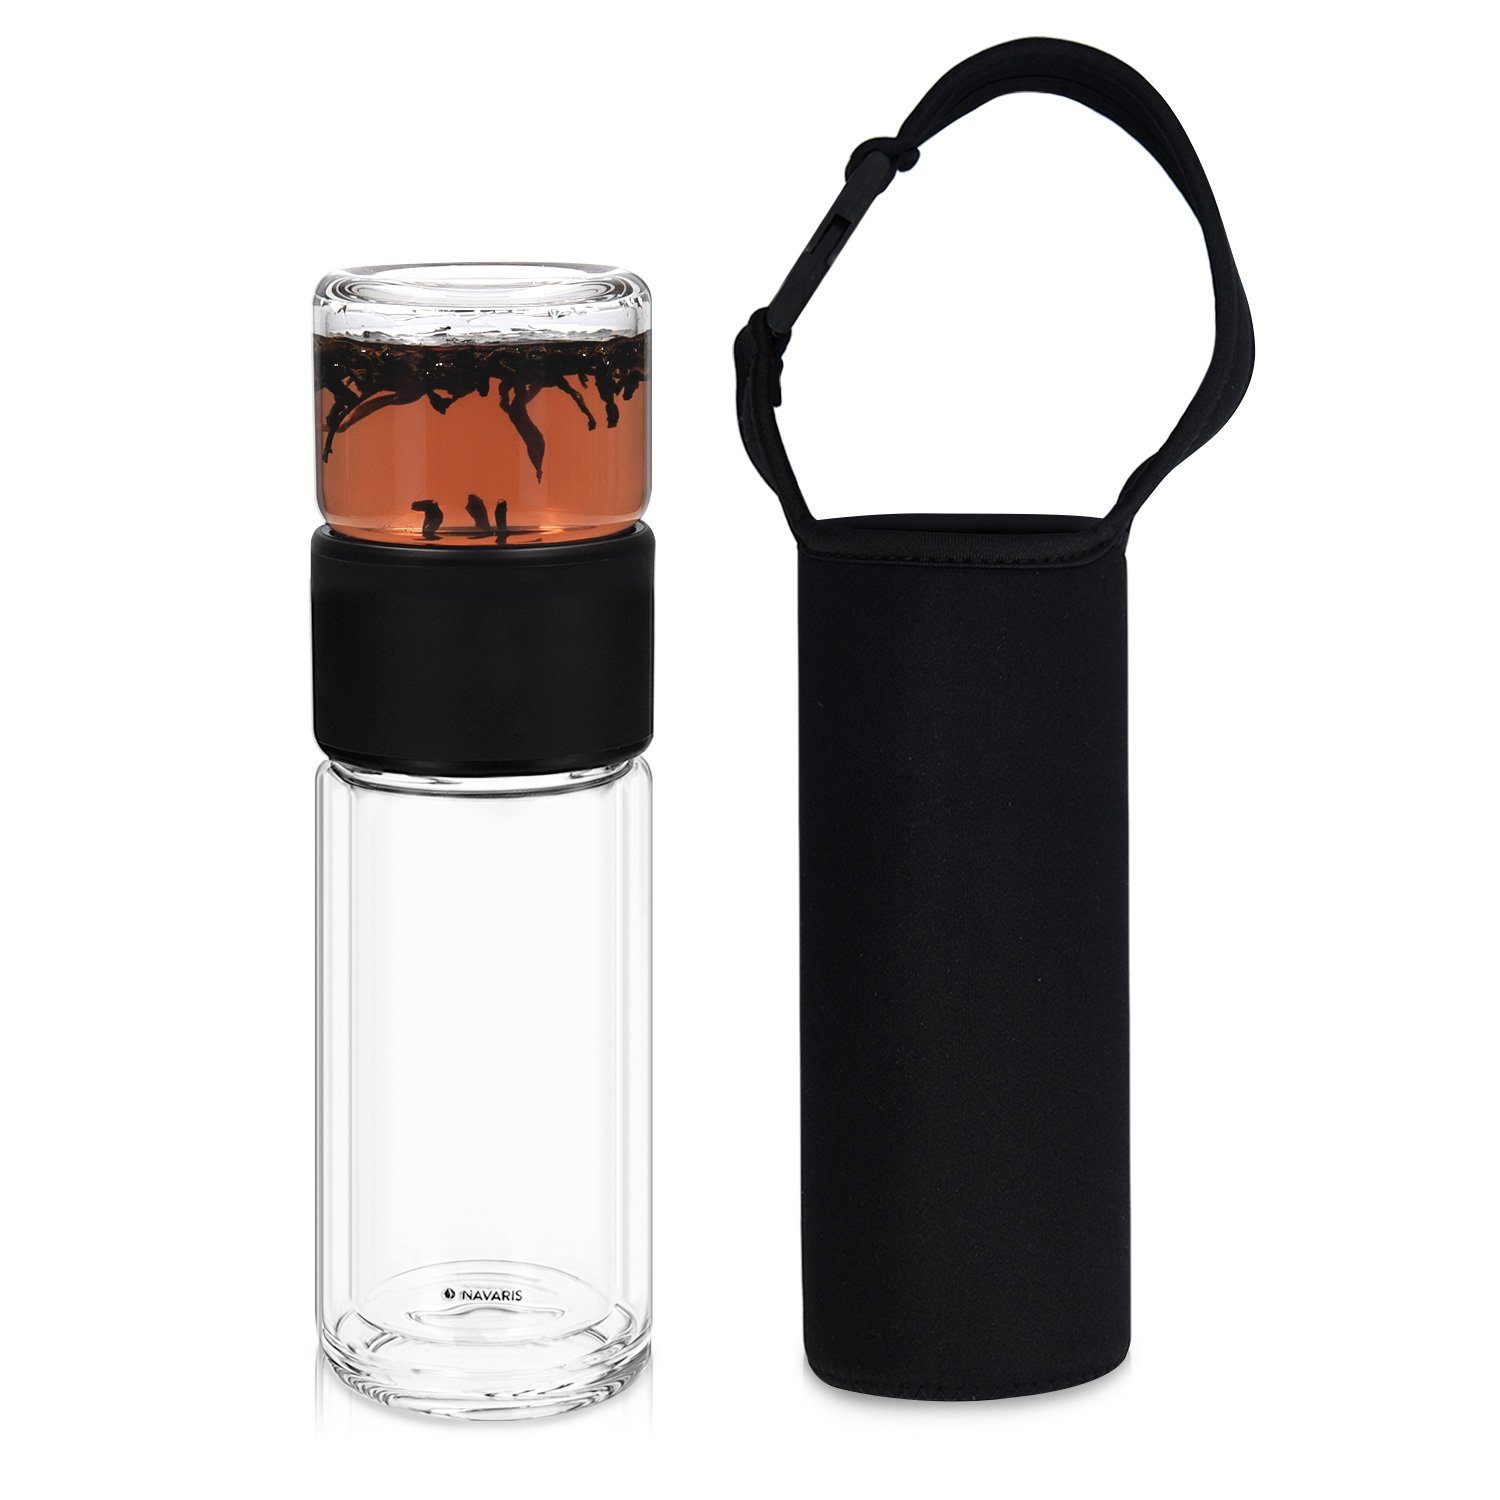 Navaris Isolierflasche Teeflasche aus Glas mit Edelstahl Sieb - 240ml - Teebereiter to go